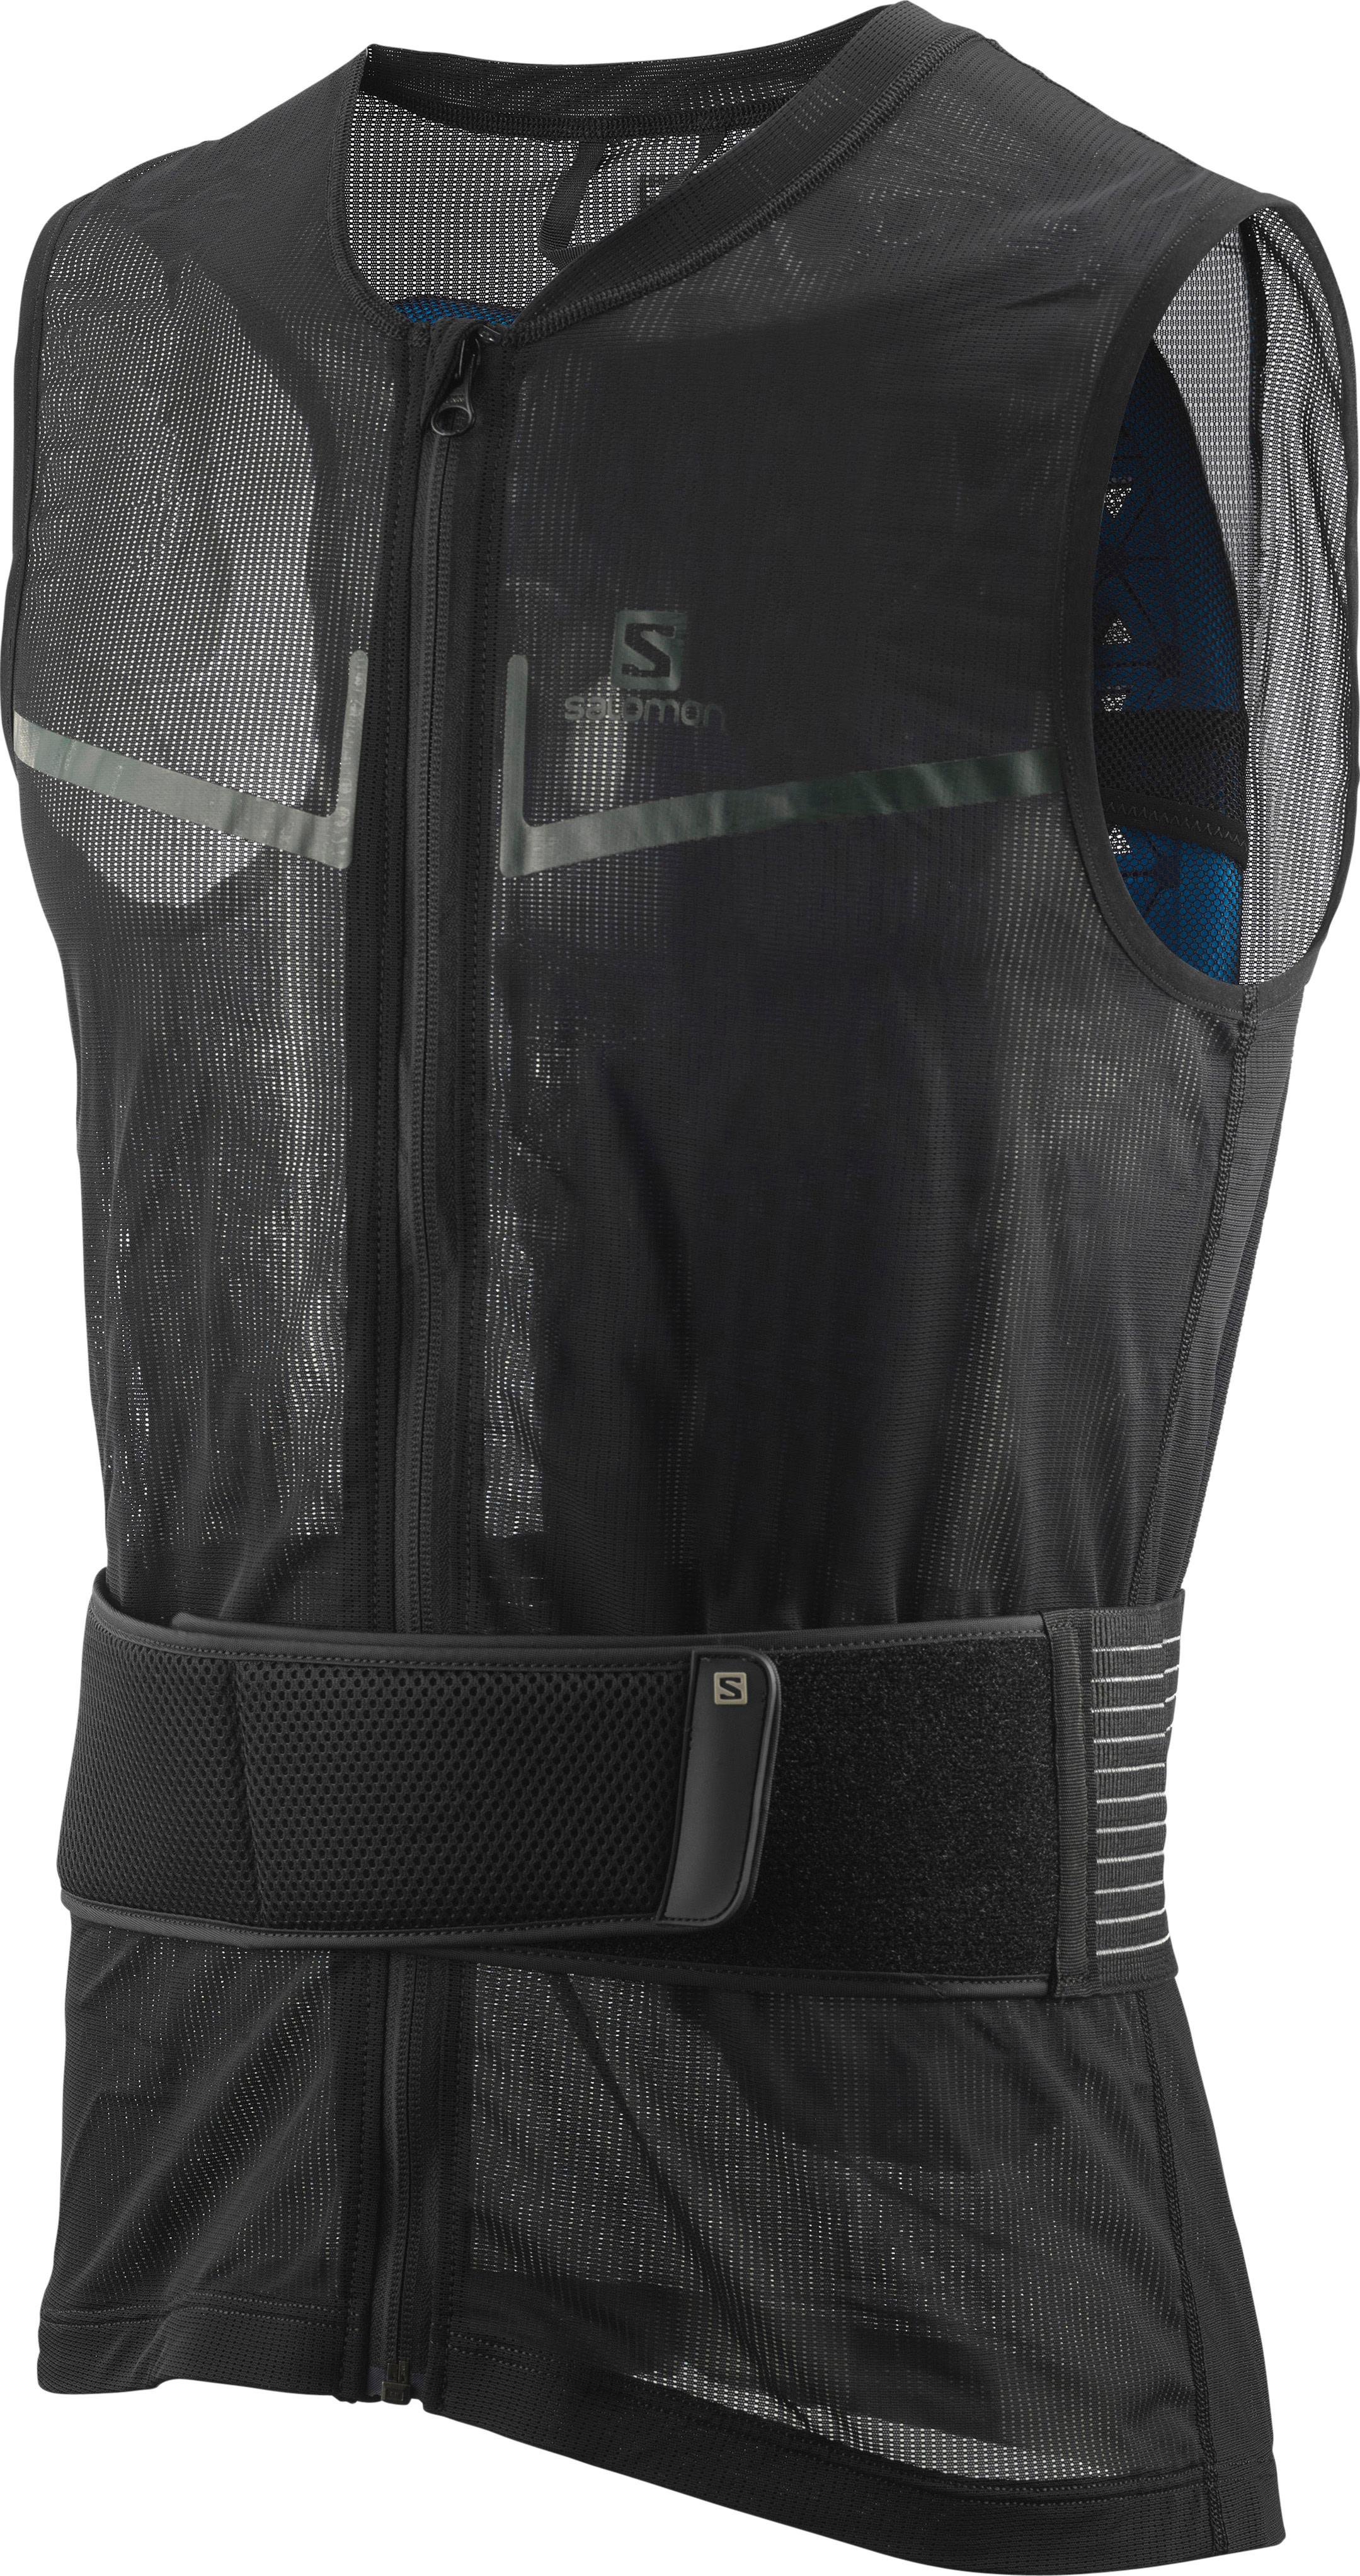 Salomon Flexcell Pro Vest Black